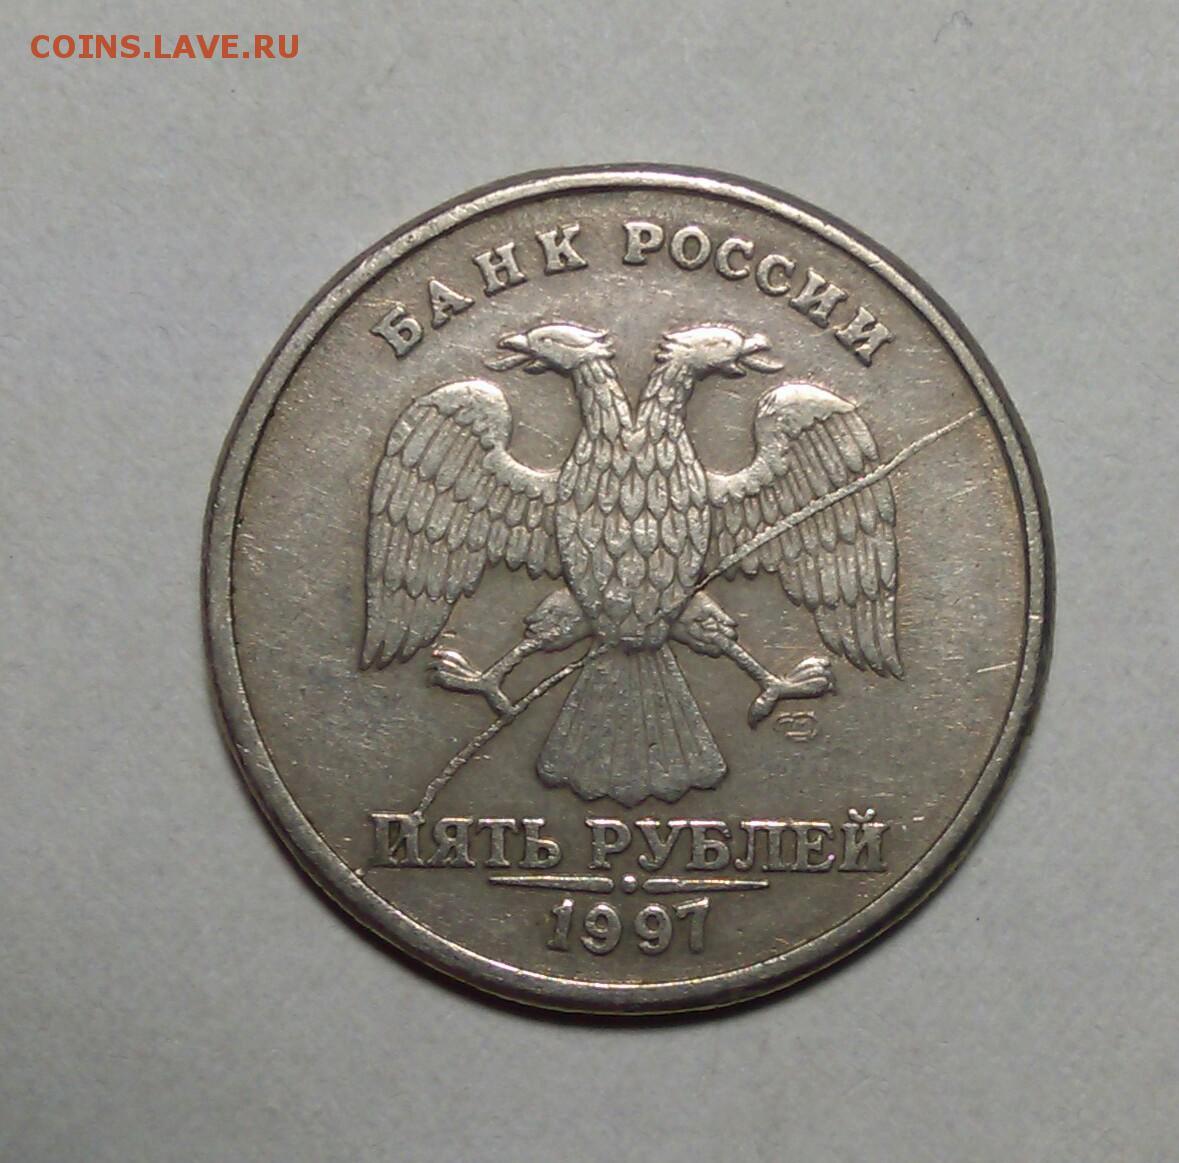 Россия 5 рублей 1997. 5 Рублей 1997 с всадником. 5 Рублей 1997 года с всадником. Самая редкая 5 рублей купюра без всадника.